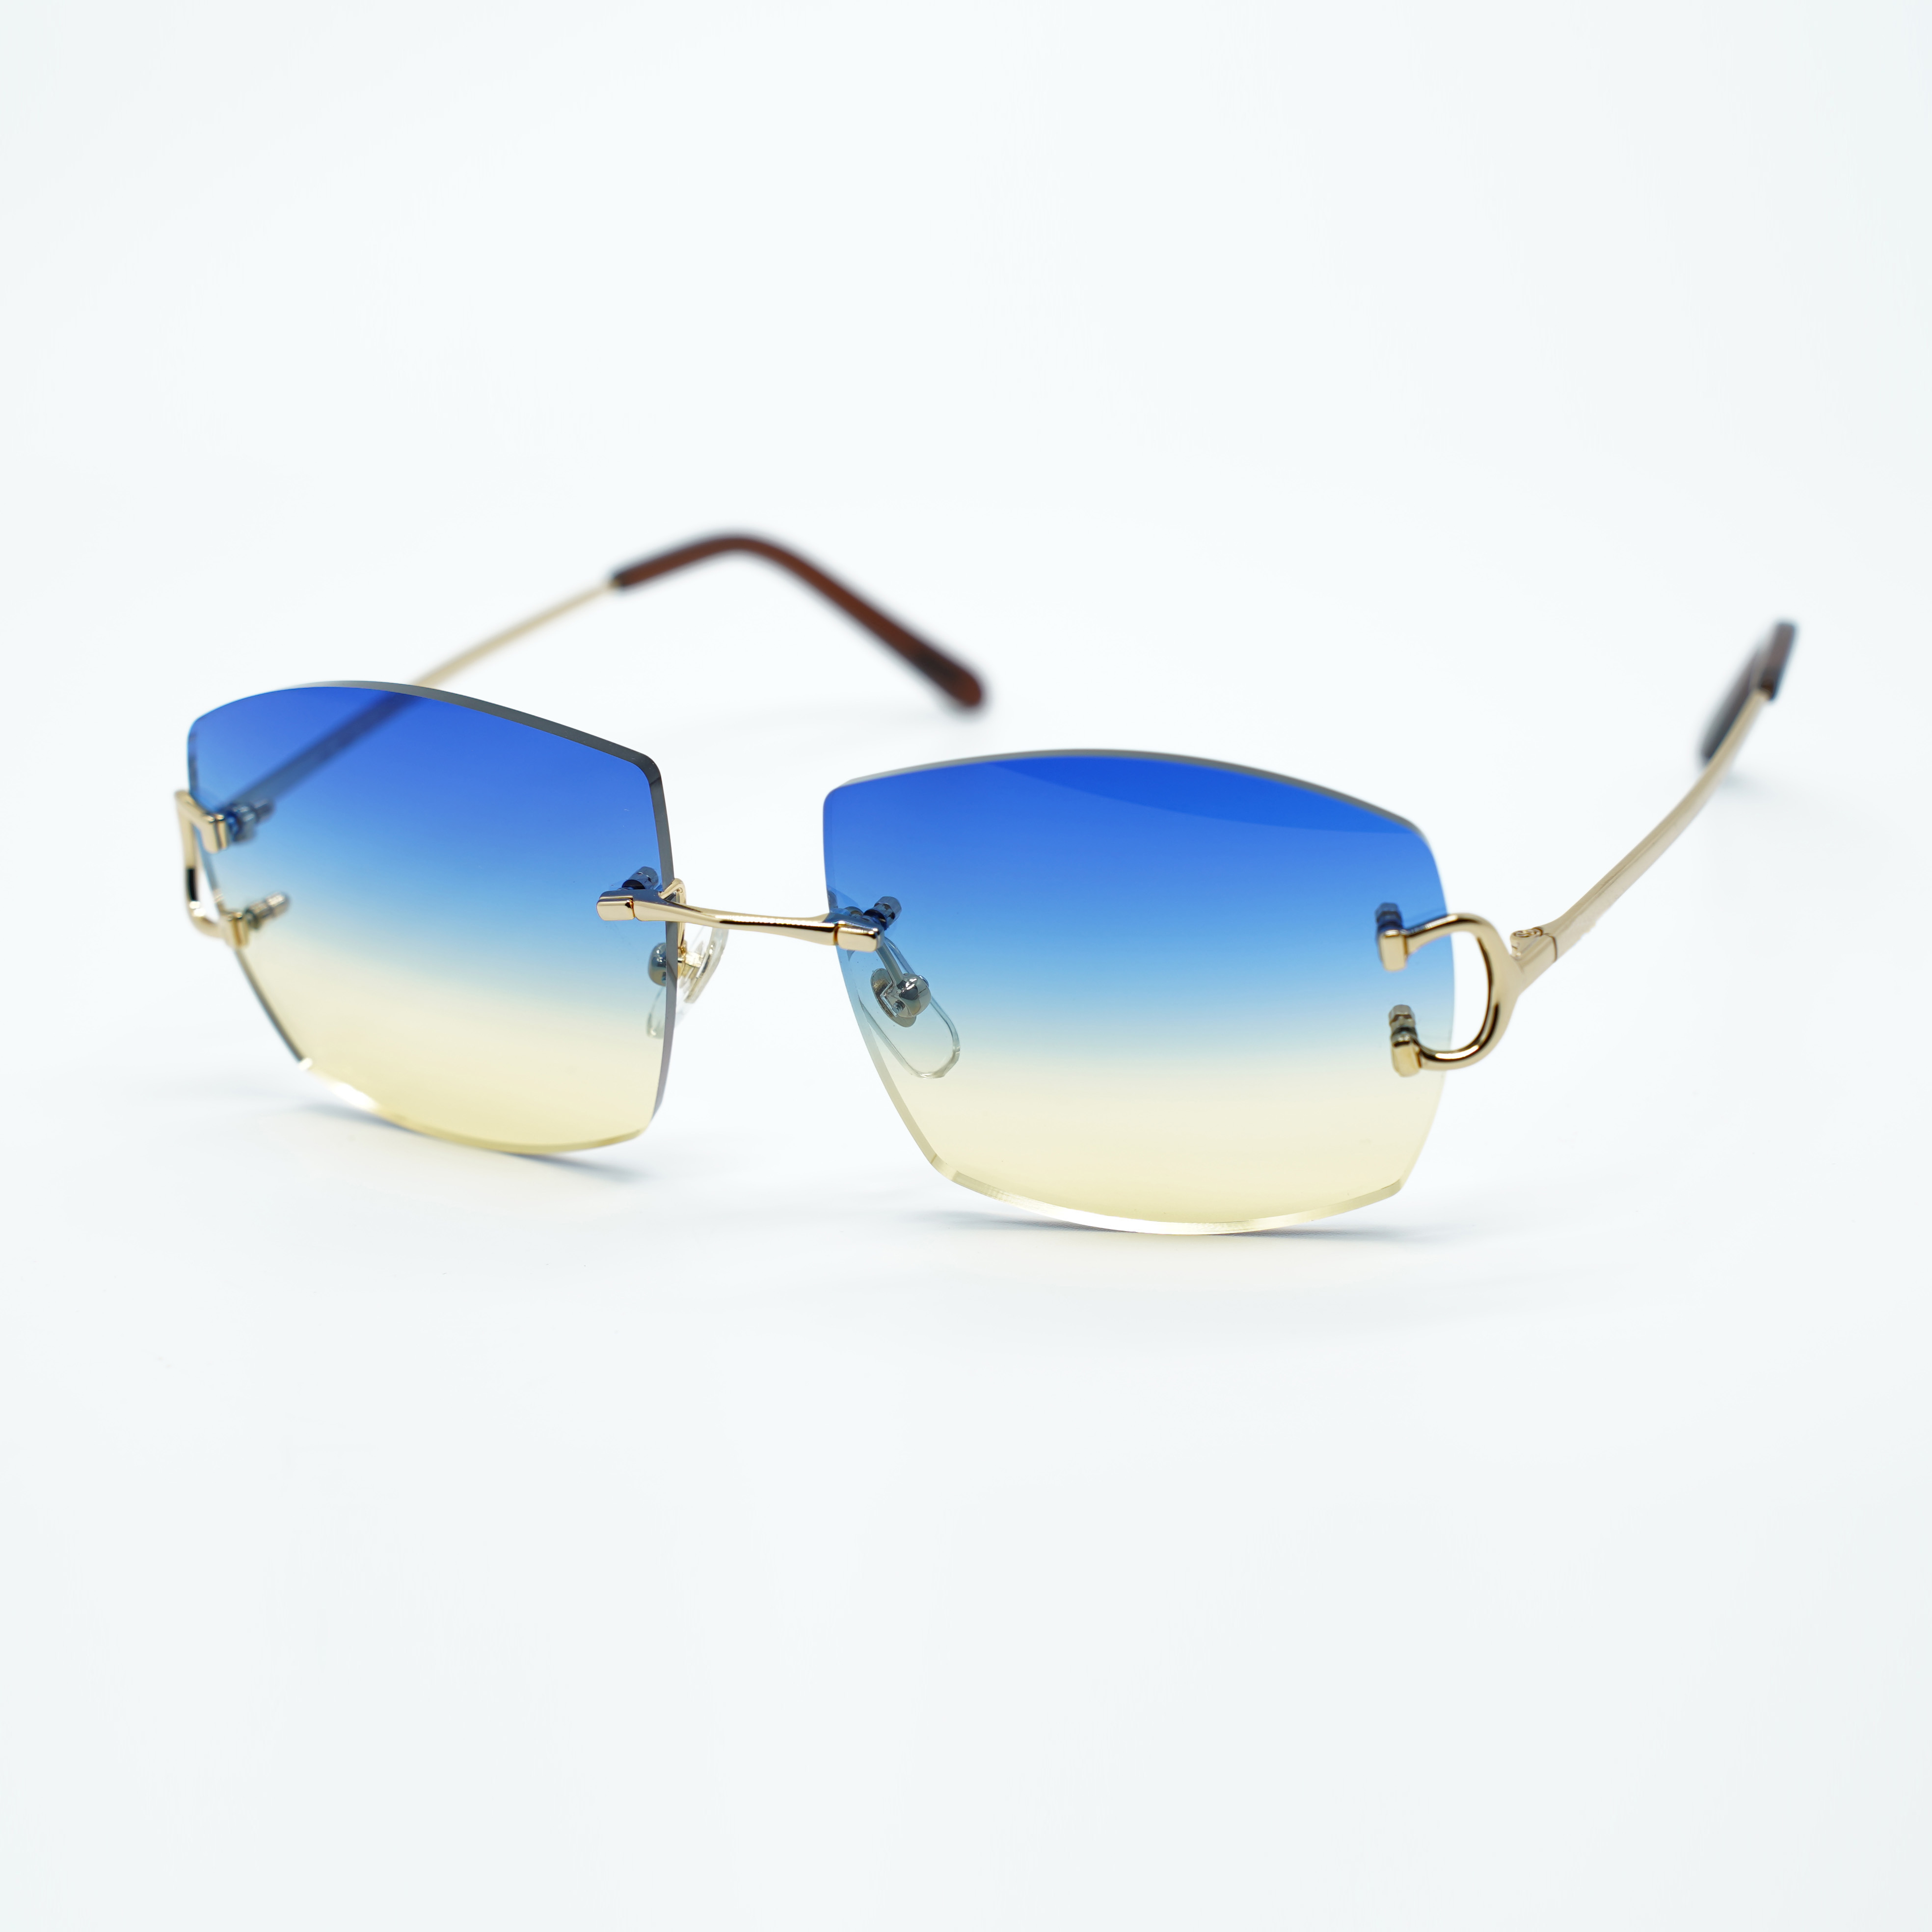 Sonnenbrille aus Metallkrallendraht A4189706 mit 60-mm-Glas und 3,0 mm Dicke3178